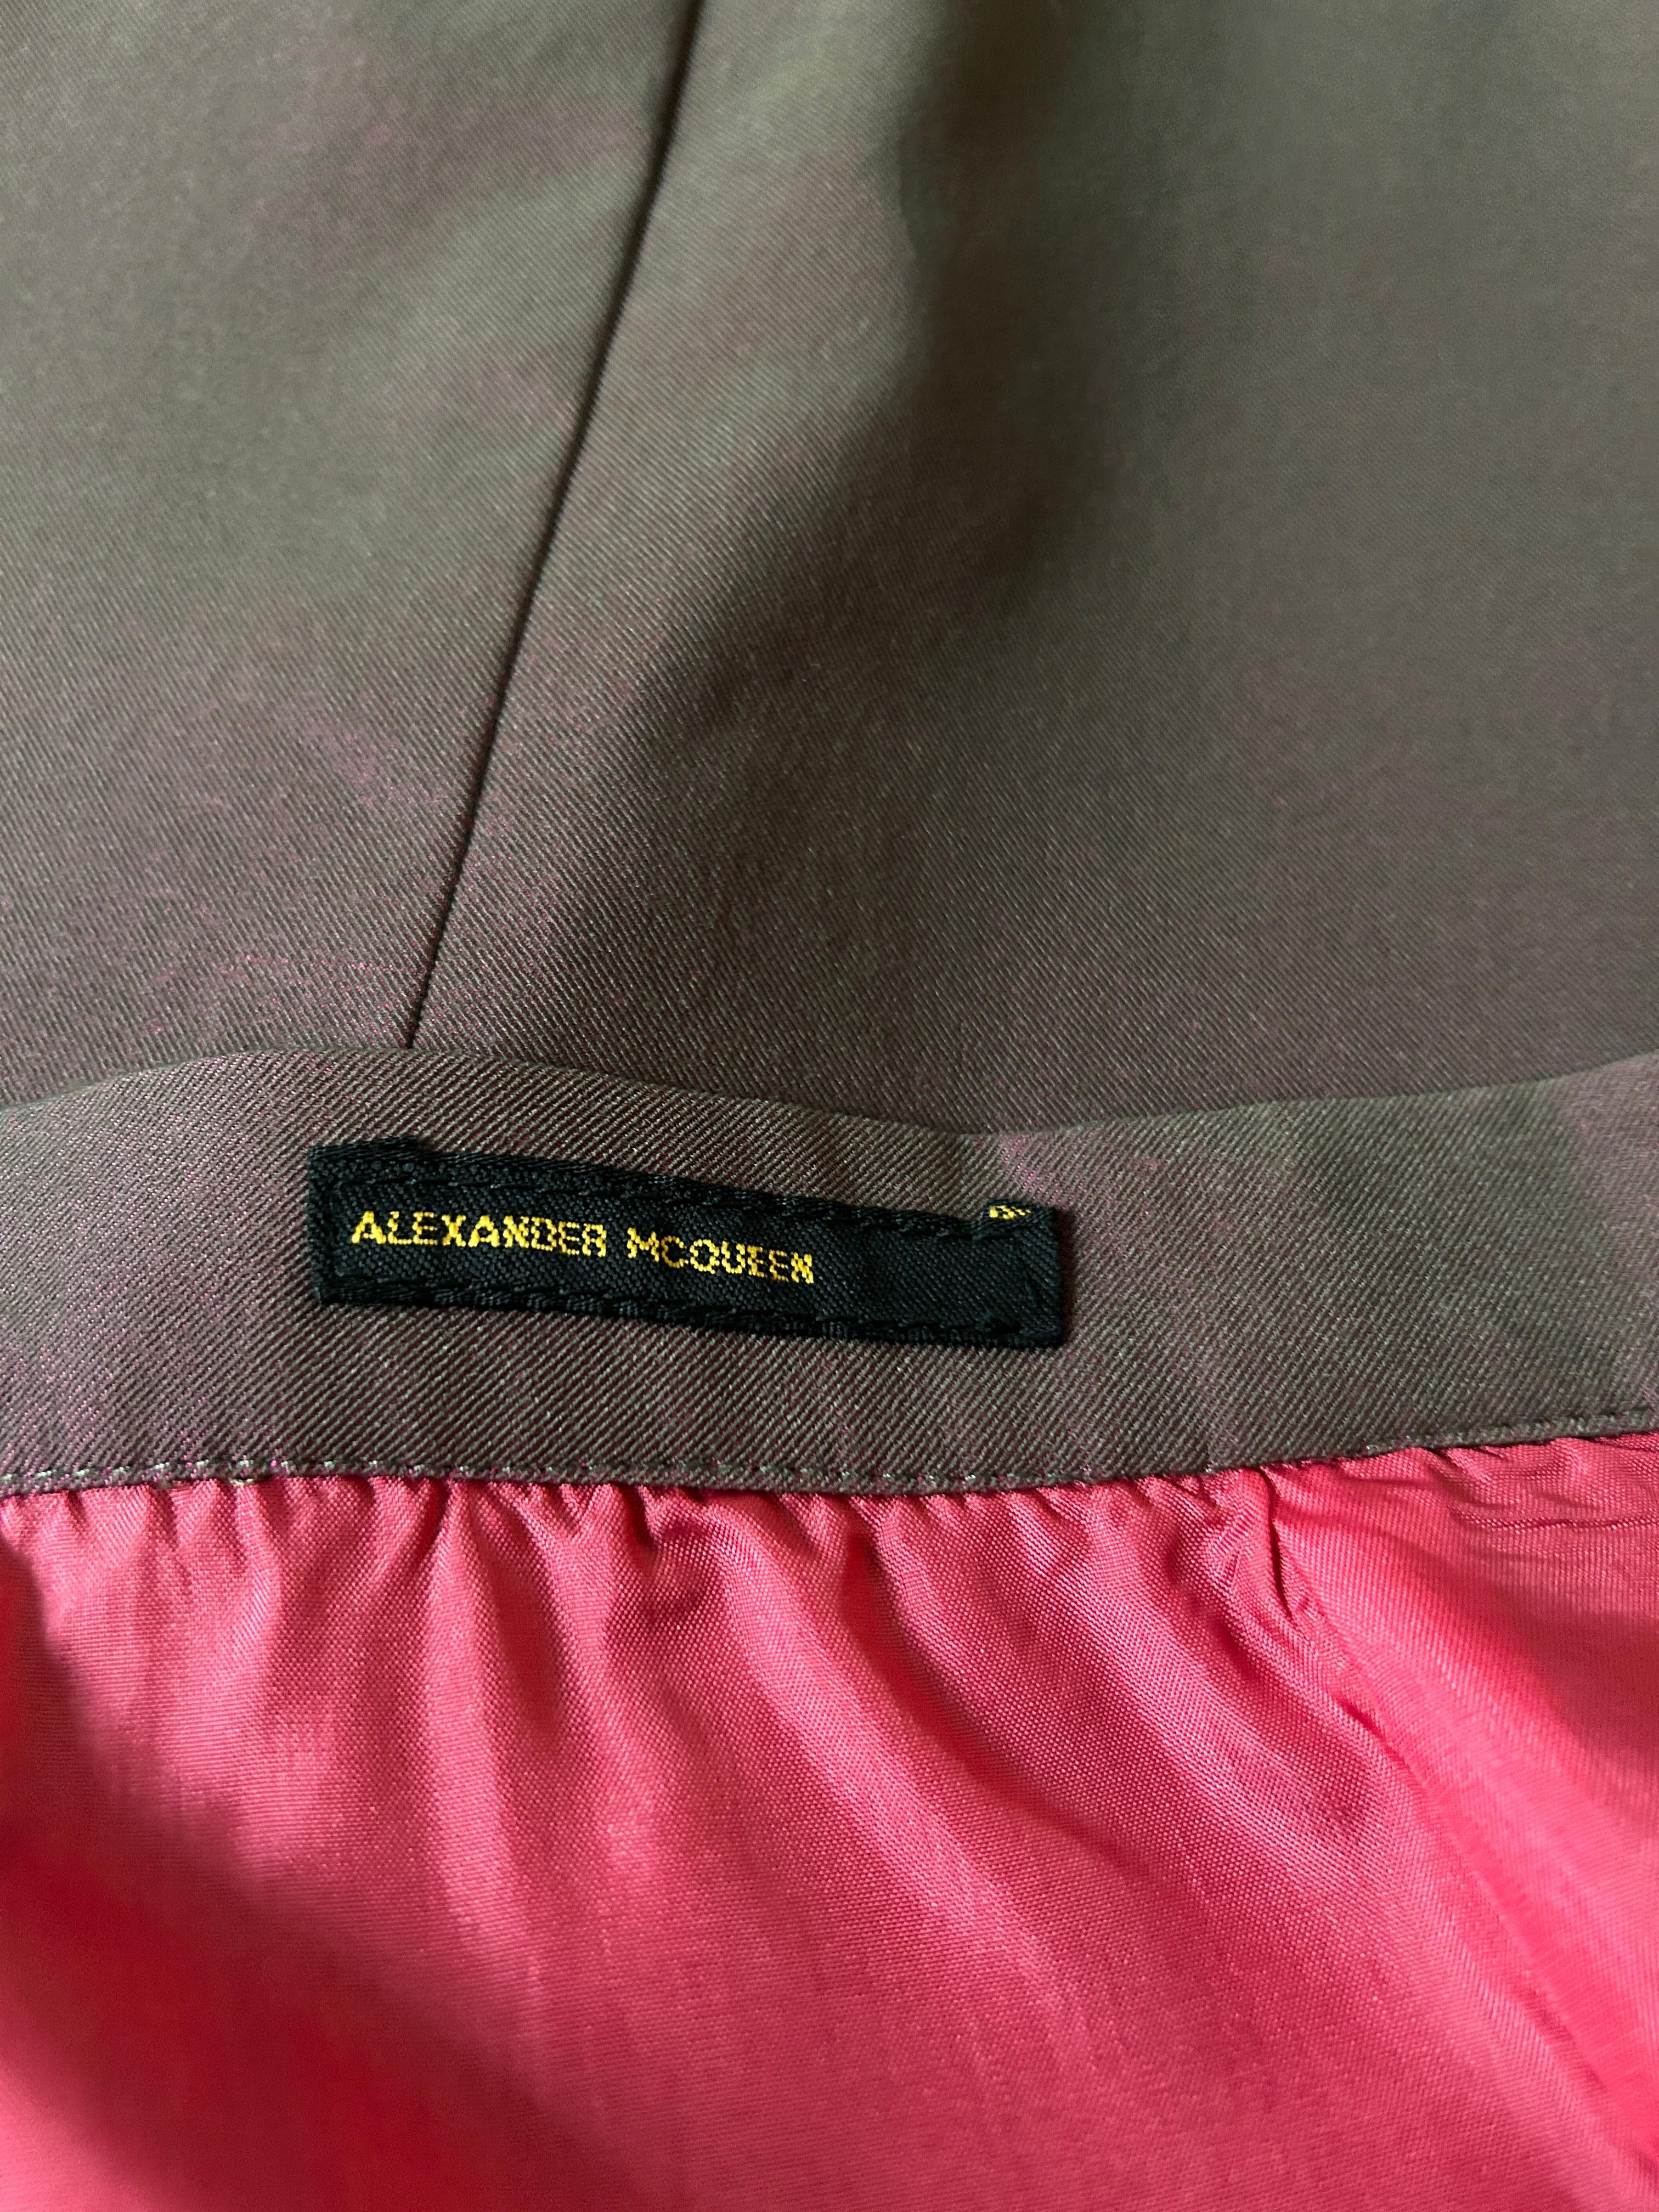 Alexander McQueen, jupe crayon rouge grisâtre vintage des années 1990 Pour femmes en vente